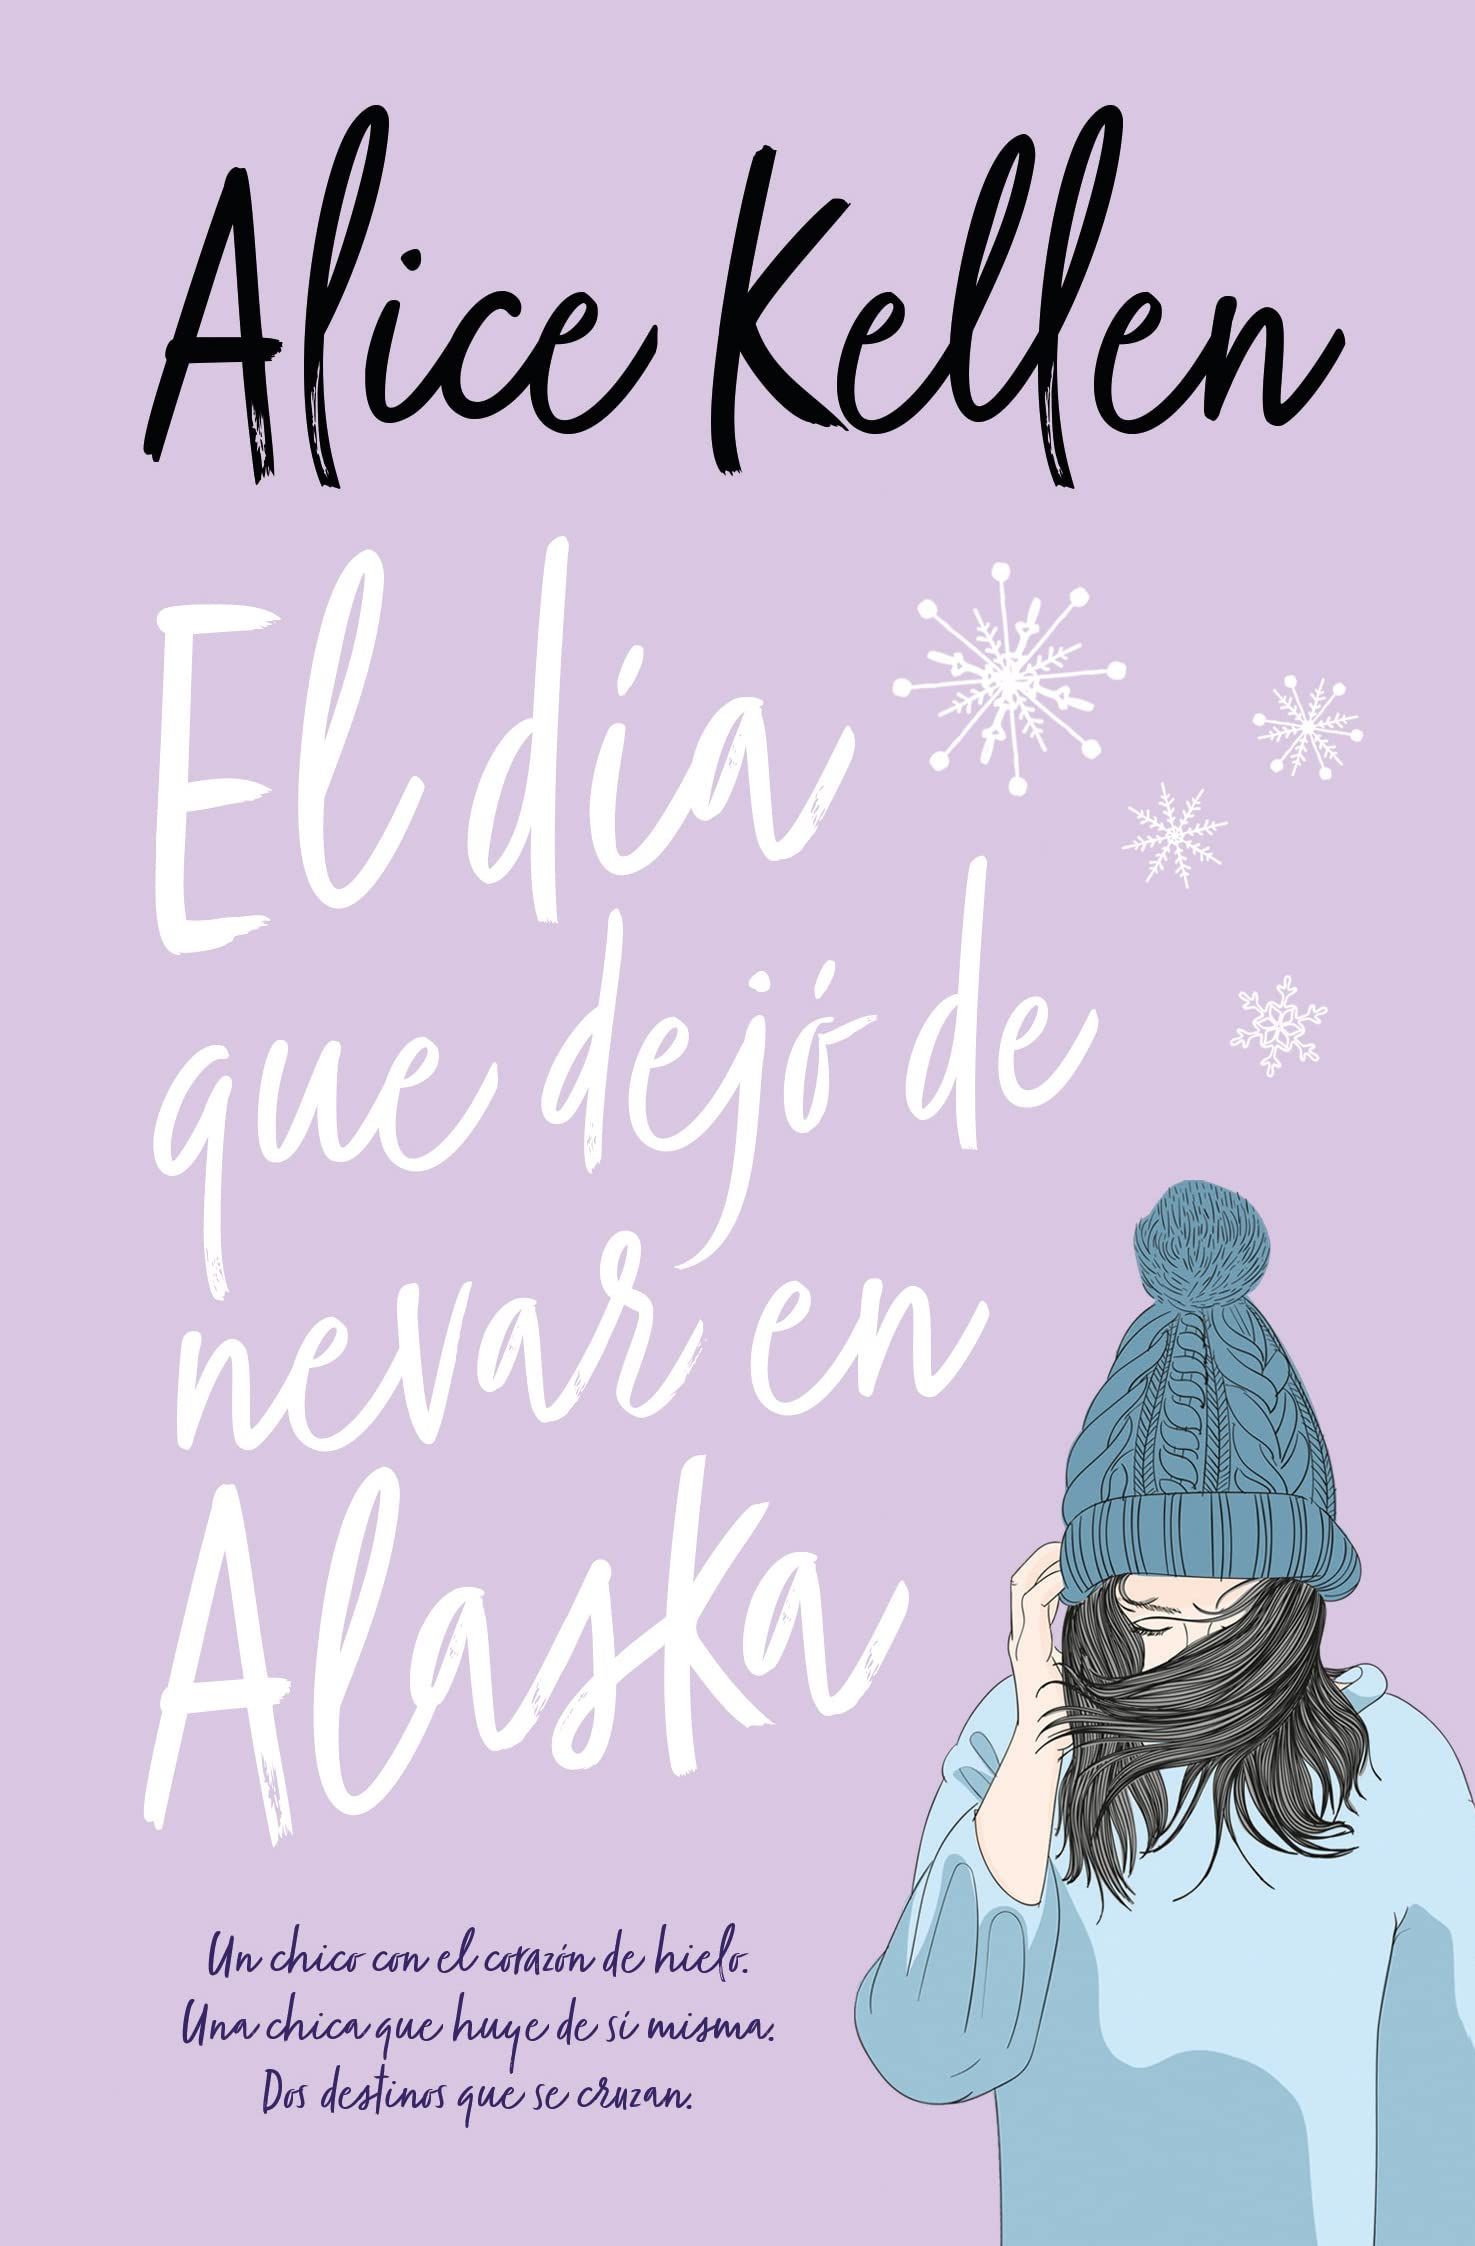 Compra el Libro "El Dia que Dejo de Nevar en Alaska" - Una Historia de Amor y Superación